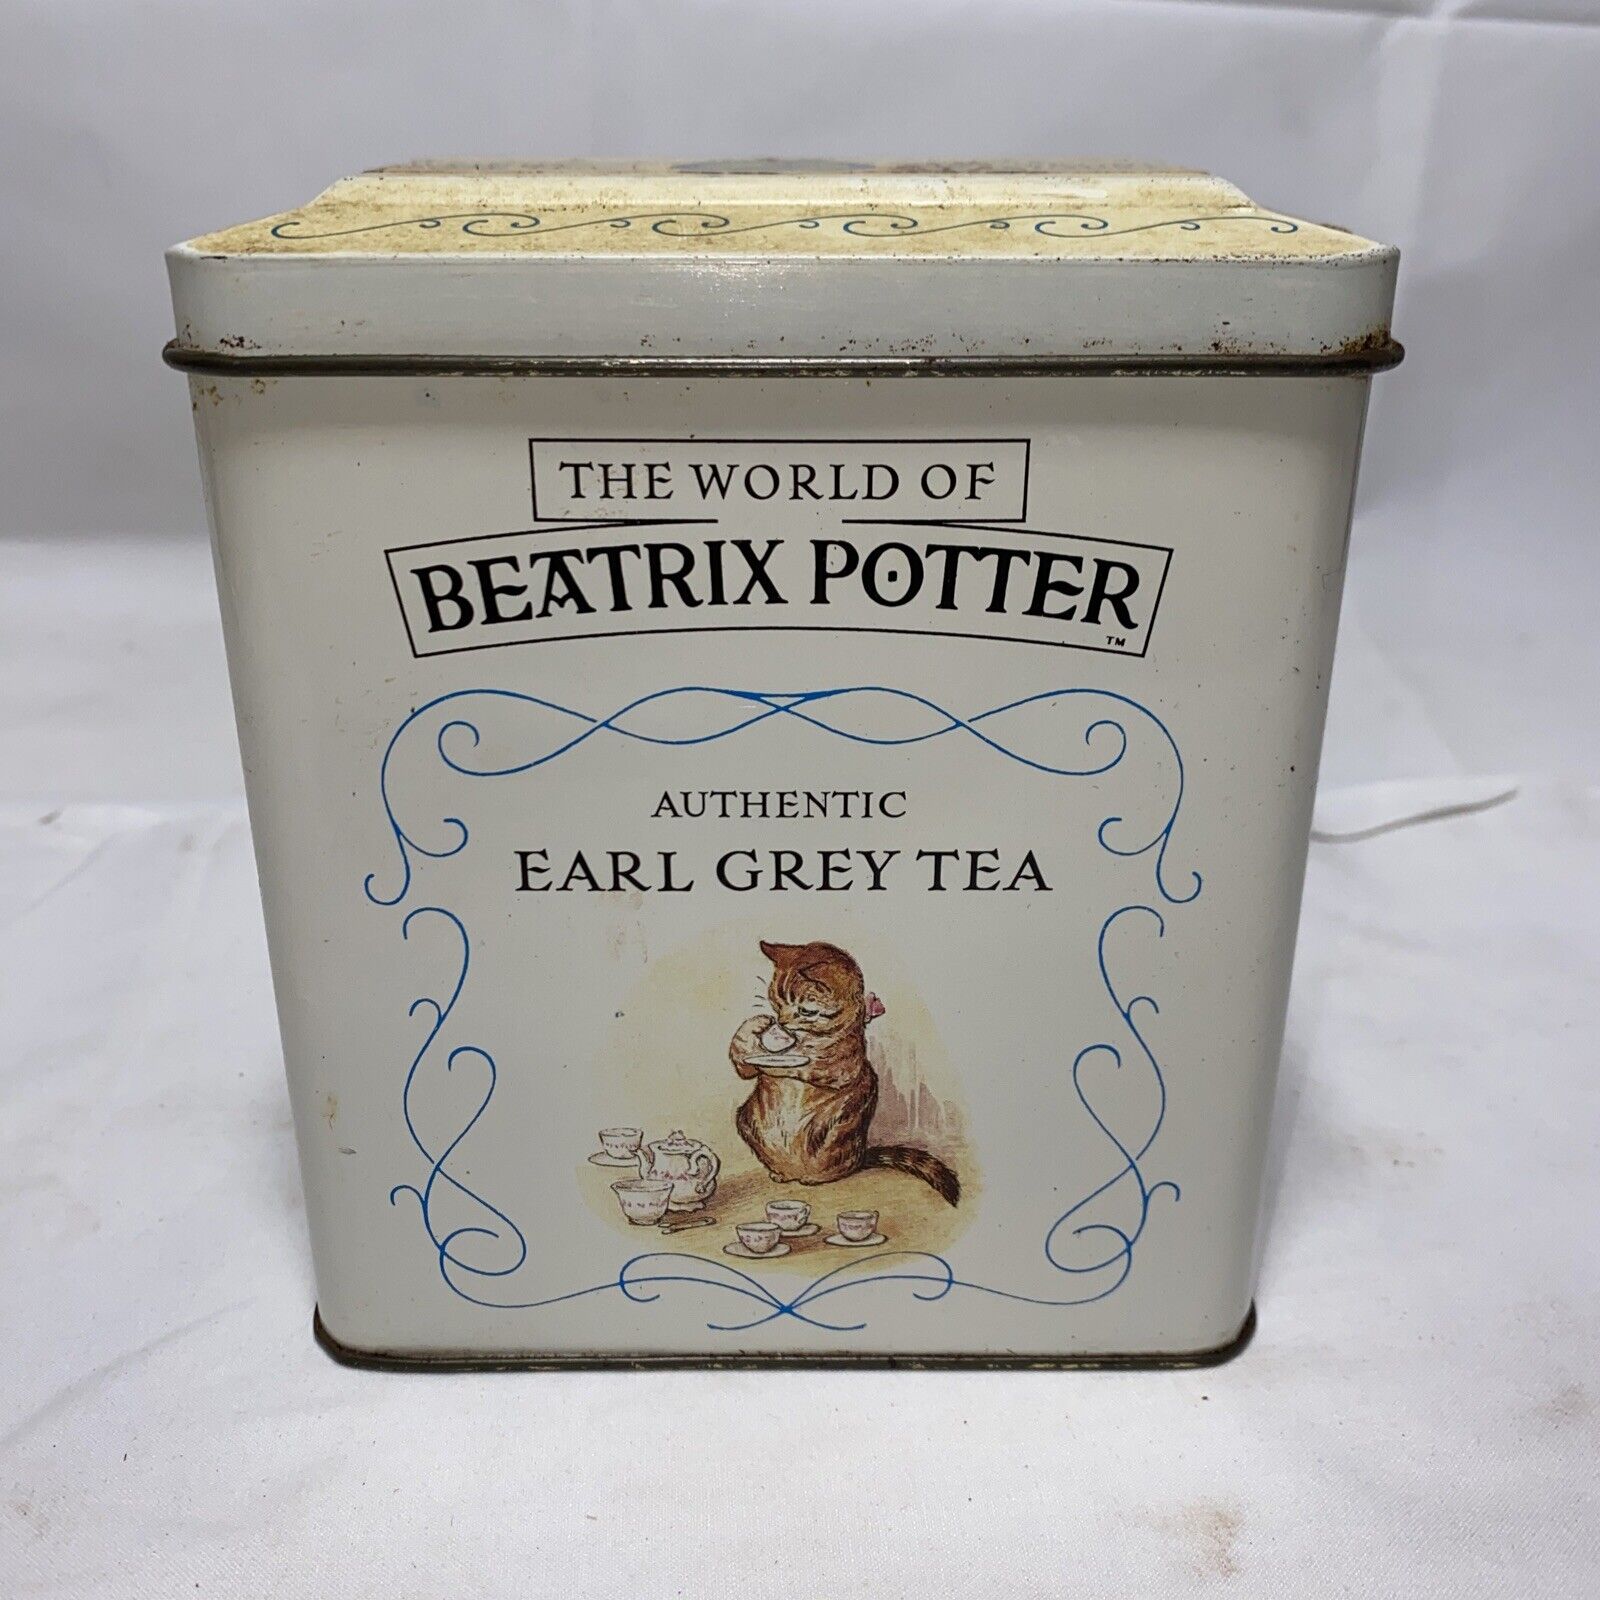 Beatrix Potter 1989 Earl Grey Tea SEALED 250G Loose Tea